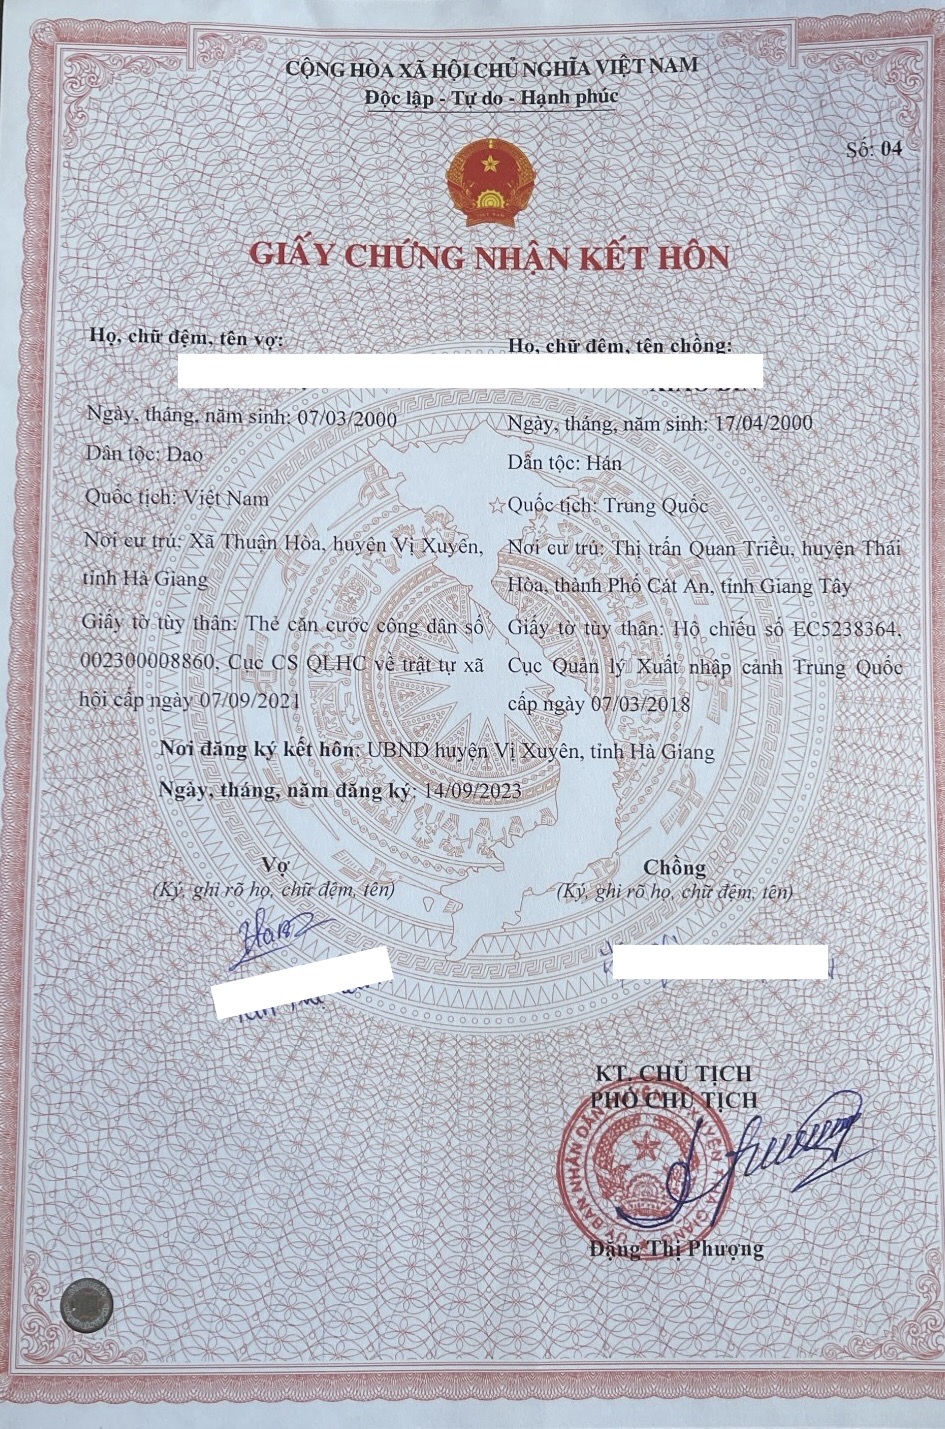 Giấy chứng nhận kết hôn | Ủy quyền đăng ký kết hôn với người nước ngoài